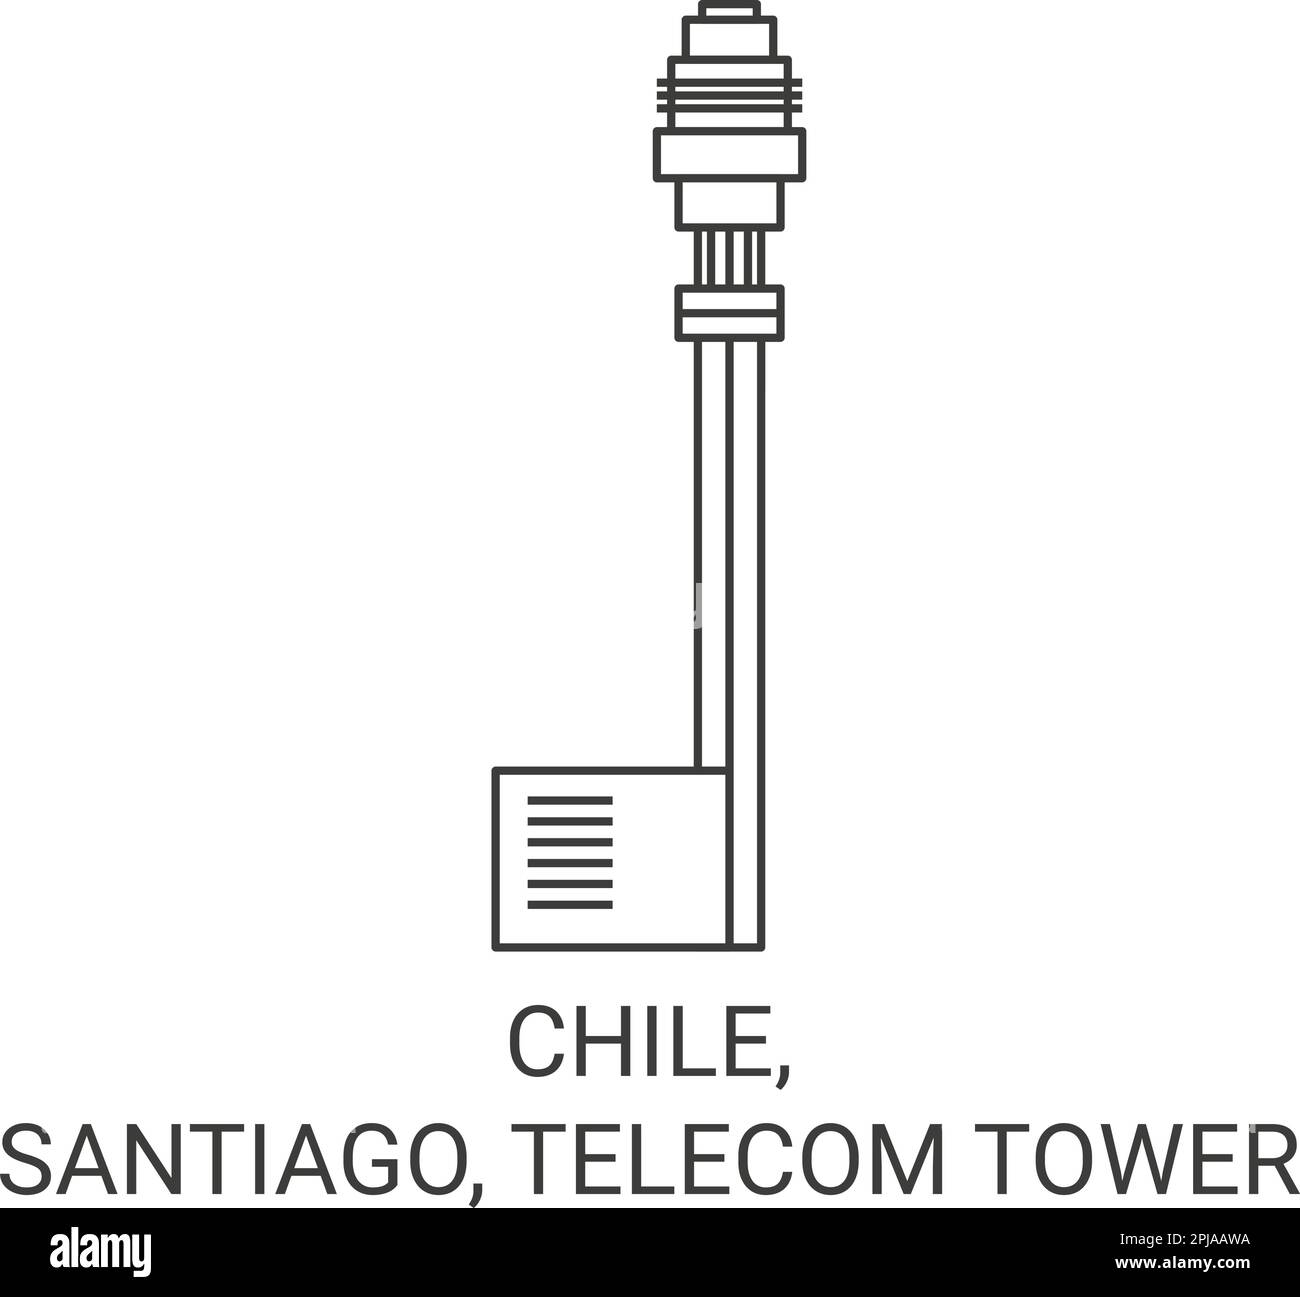 Chili, Santiago, Telecom Tower Voyage illustration vecteur Illustration de Vecteur